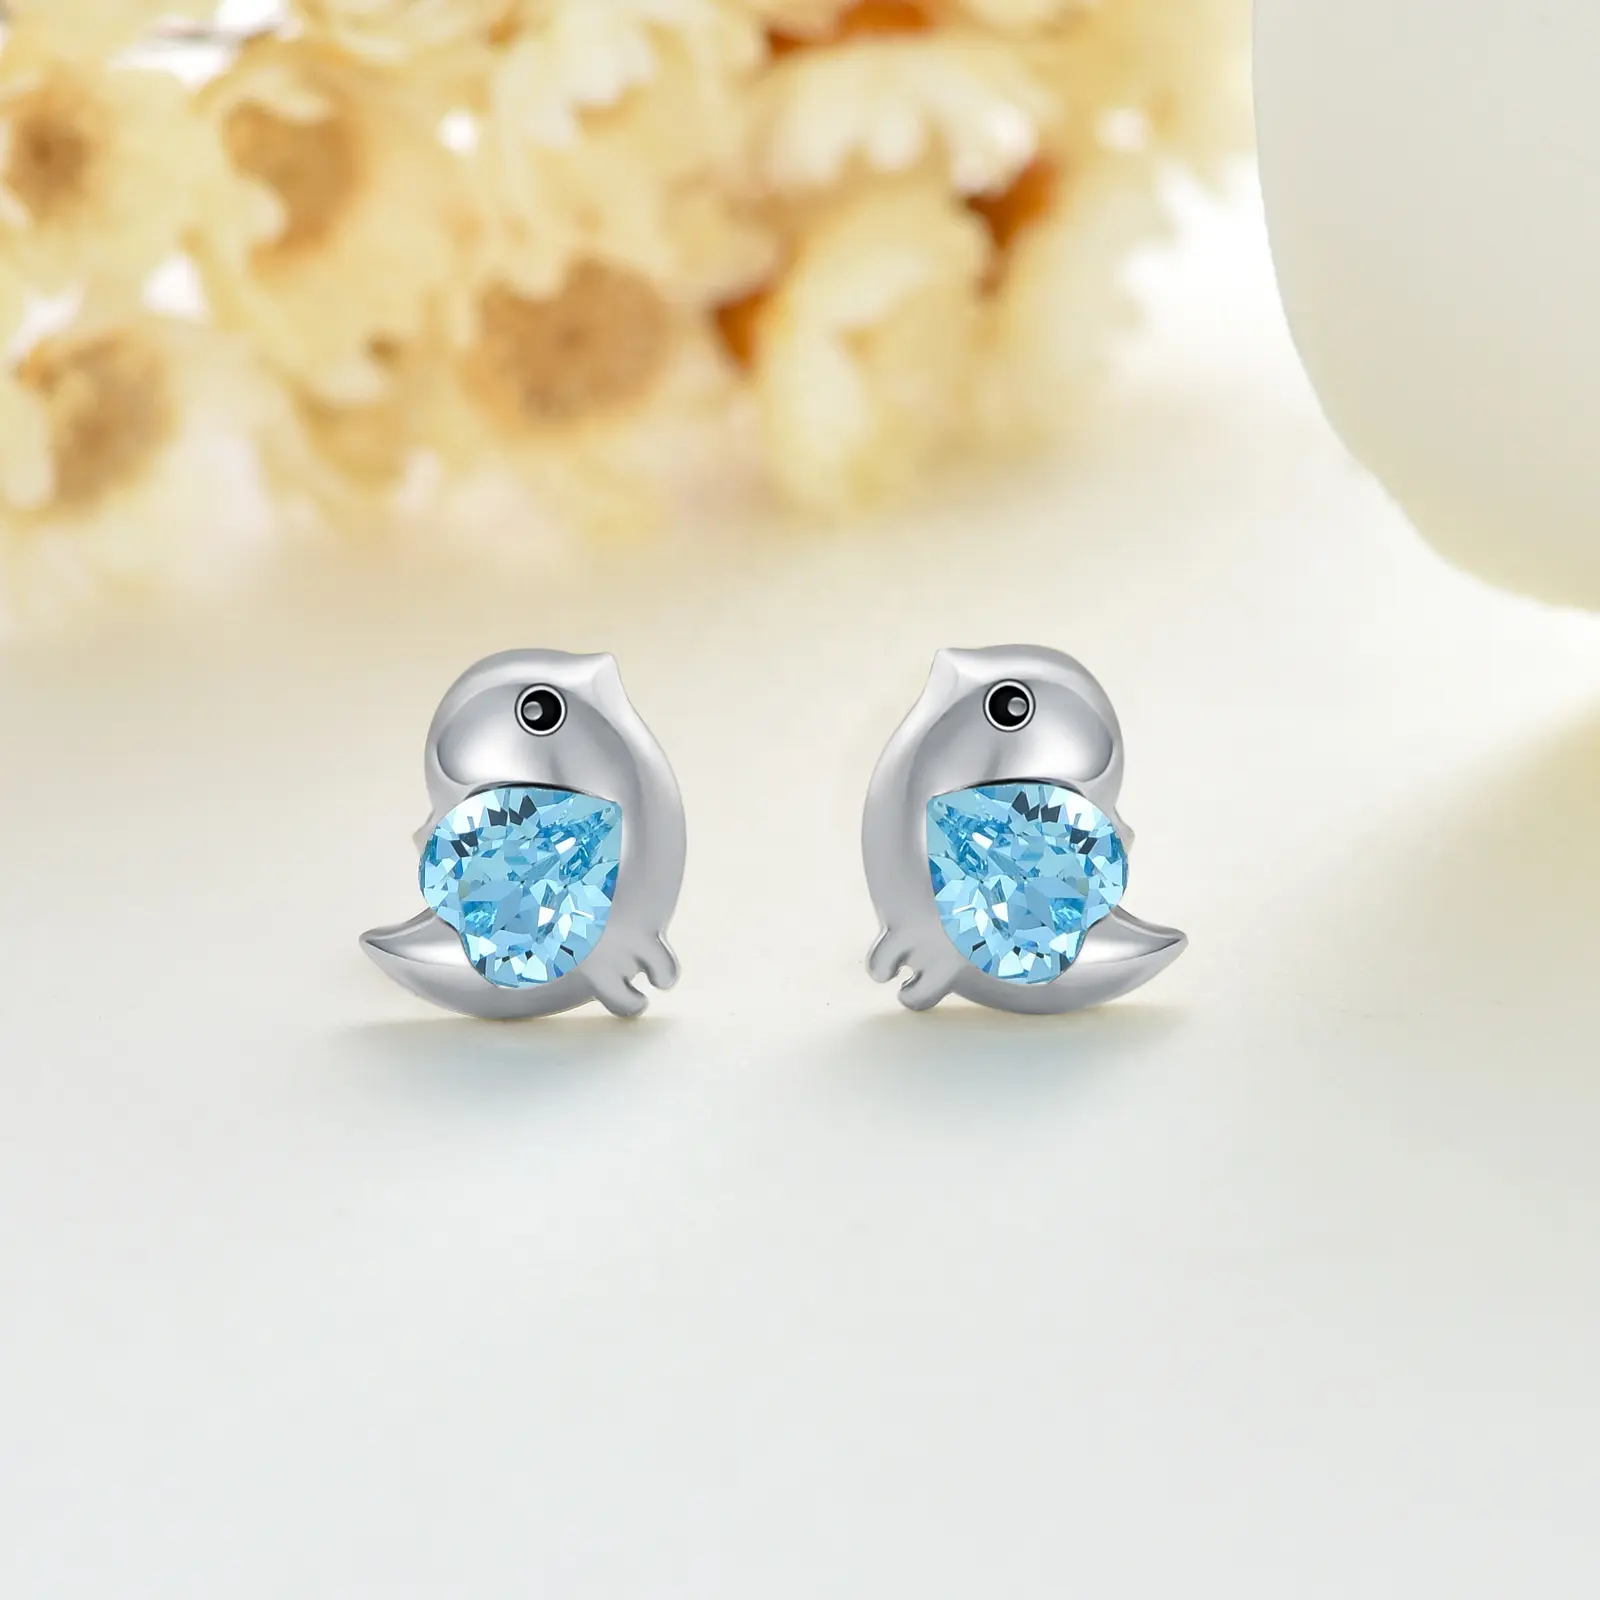 Anting-anting kancing Burung Hati kristal biru perak Sterling 925 berlapis emas putih perhiasan anting-anting